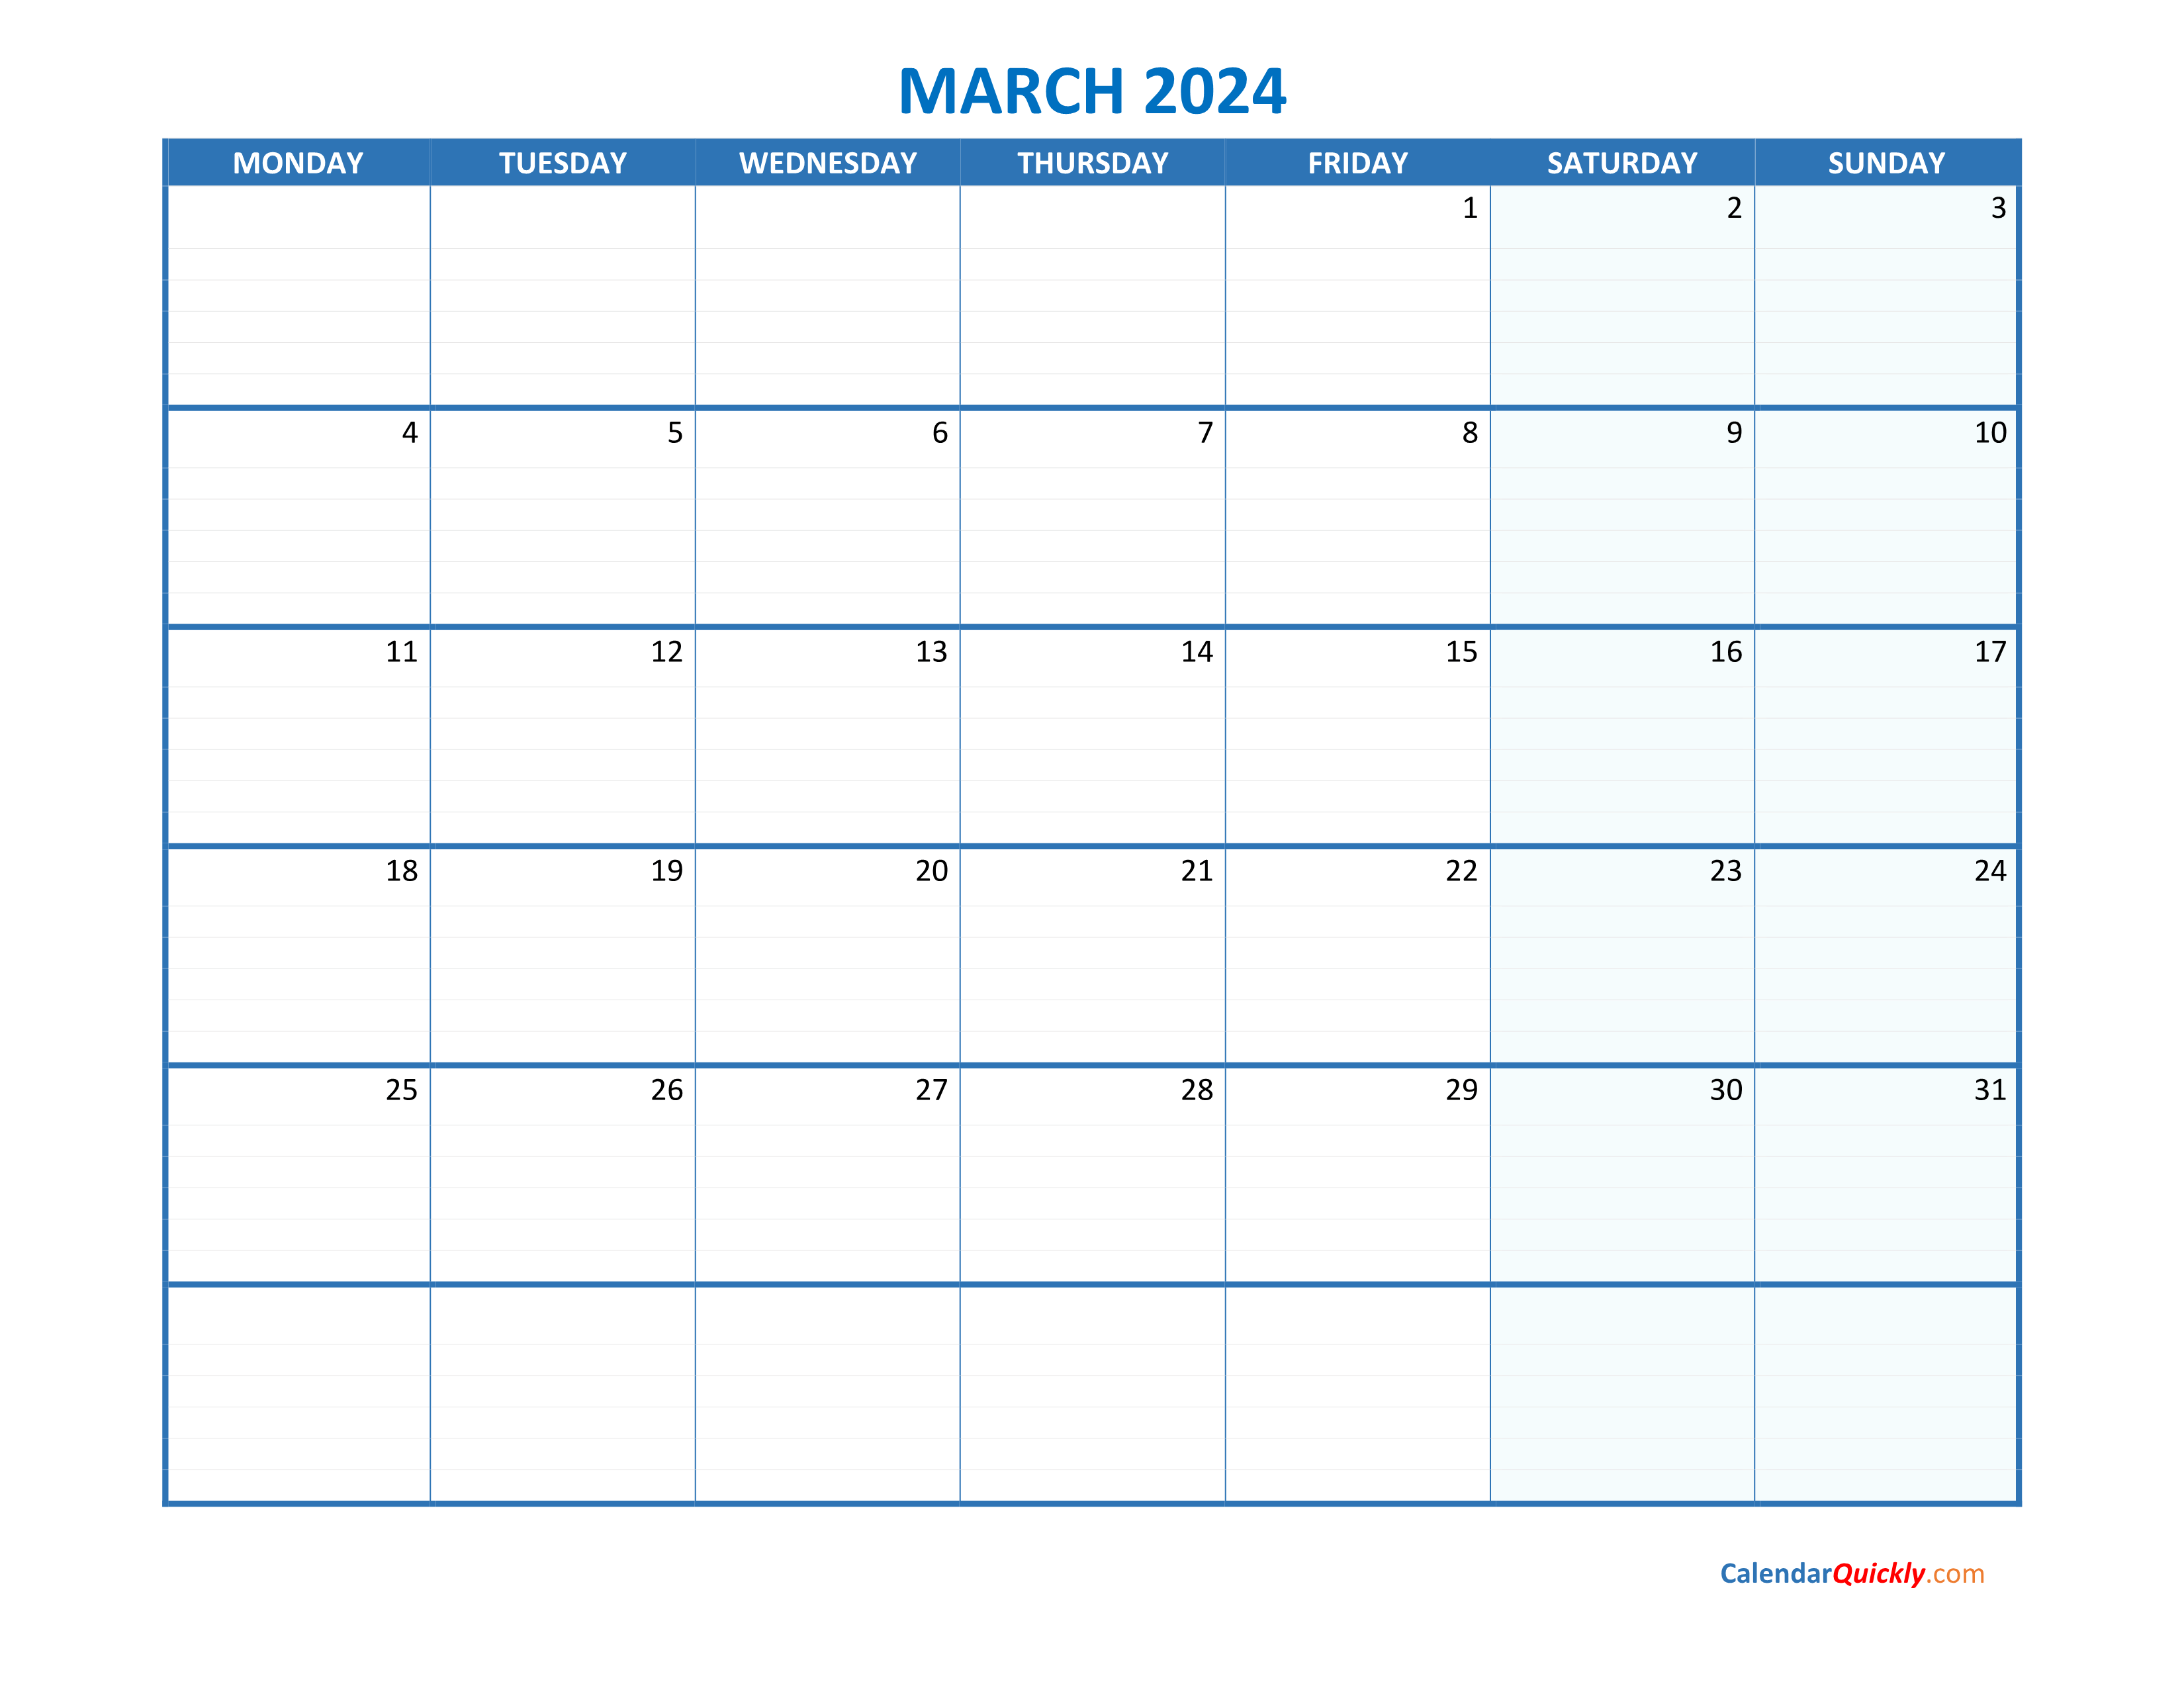 March Monday 2024 Blank Calendar Calendar Quickly